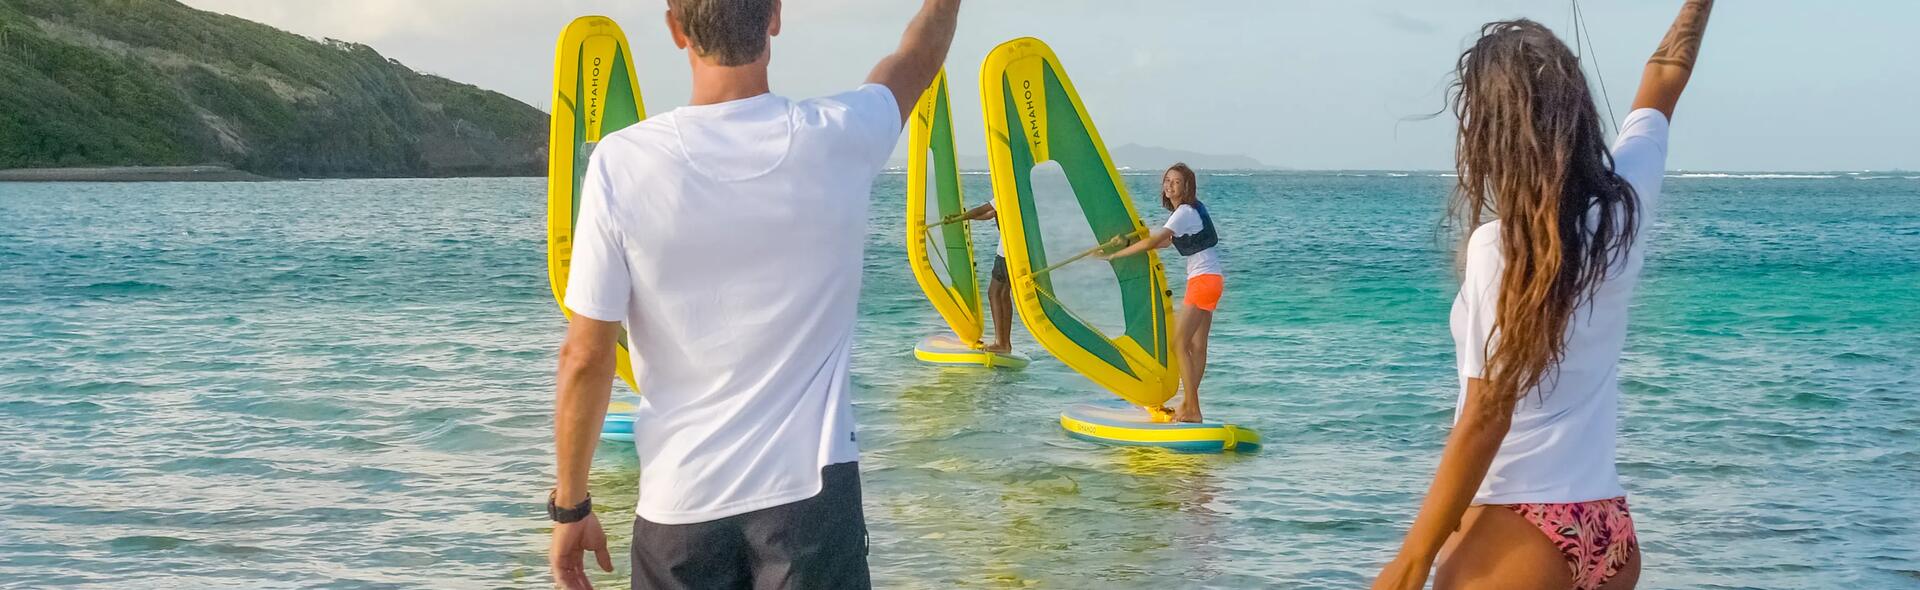 osoby machające z brzegu do dziewczyny uczącej się pływać na desce windsurfingowej 